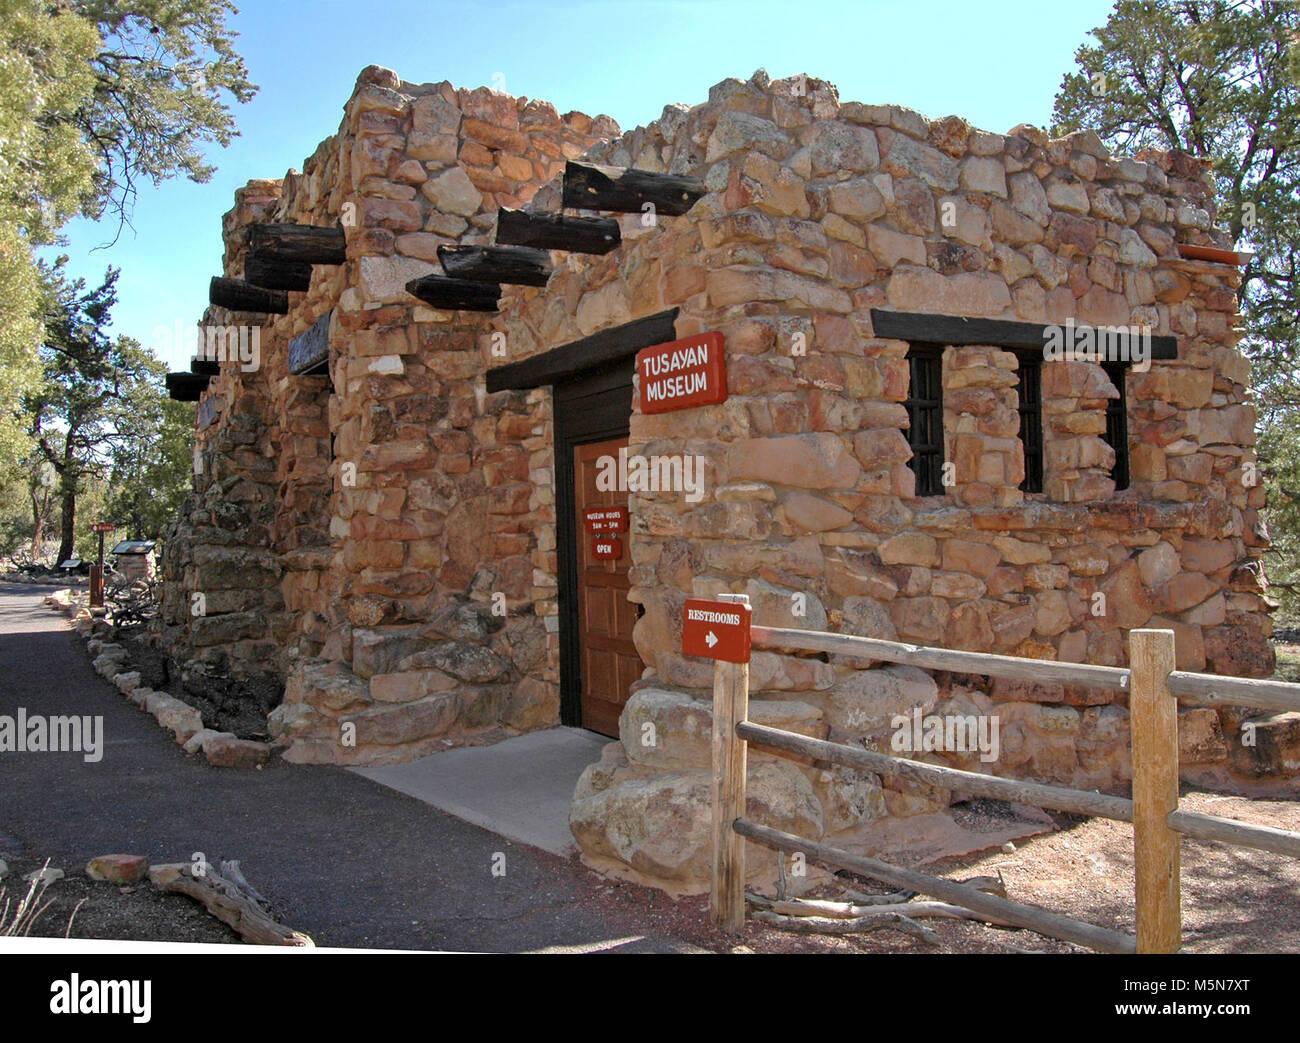 Le Parc National du Grand Canyon Tusayan Museum . Une visite à Tusayan Museum donne un aperçu de la vie des Indiens Pueblo à Grand Canyon certains il y a 800 ans. L'entrée est libre. C'était une communauté prospère comme en témoignent ses poteries, pointes de flèches et autres objets ménagers. Banque D'Images